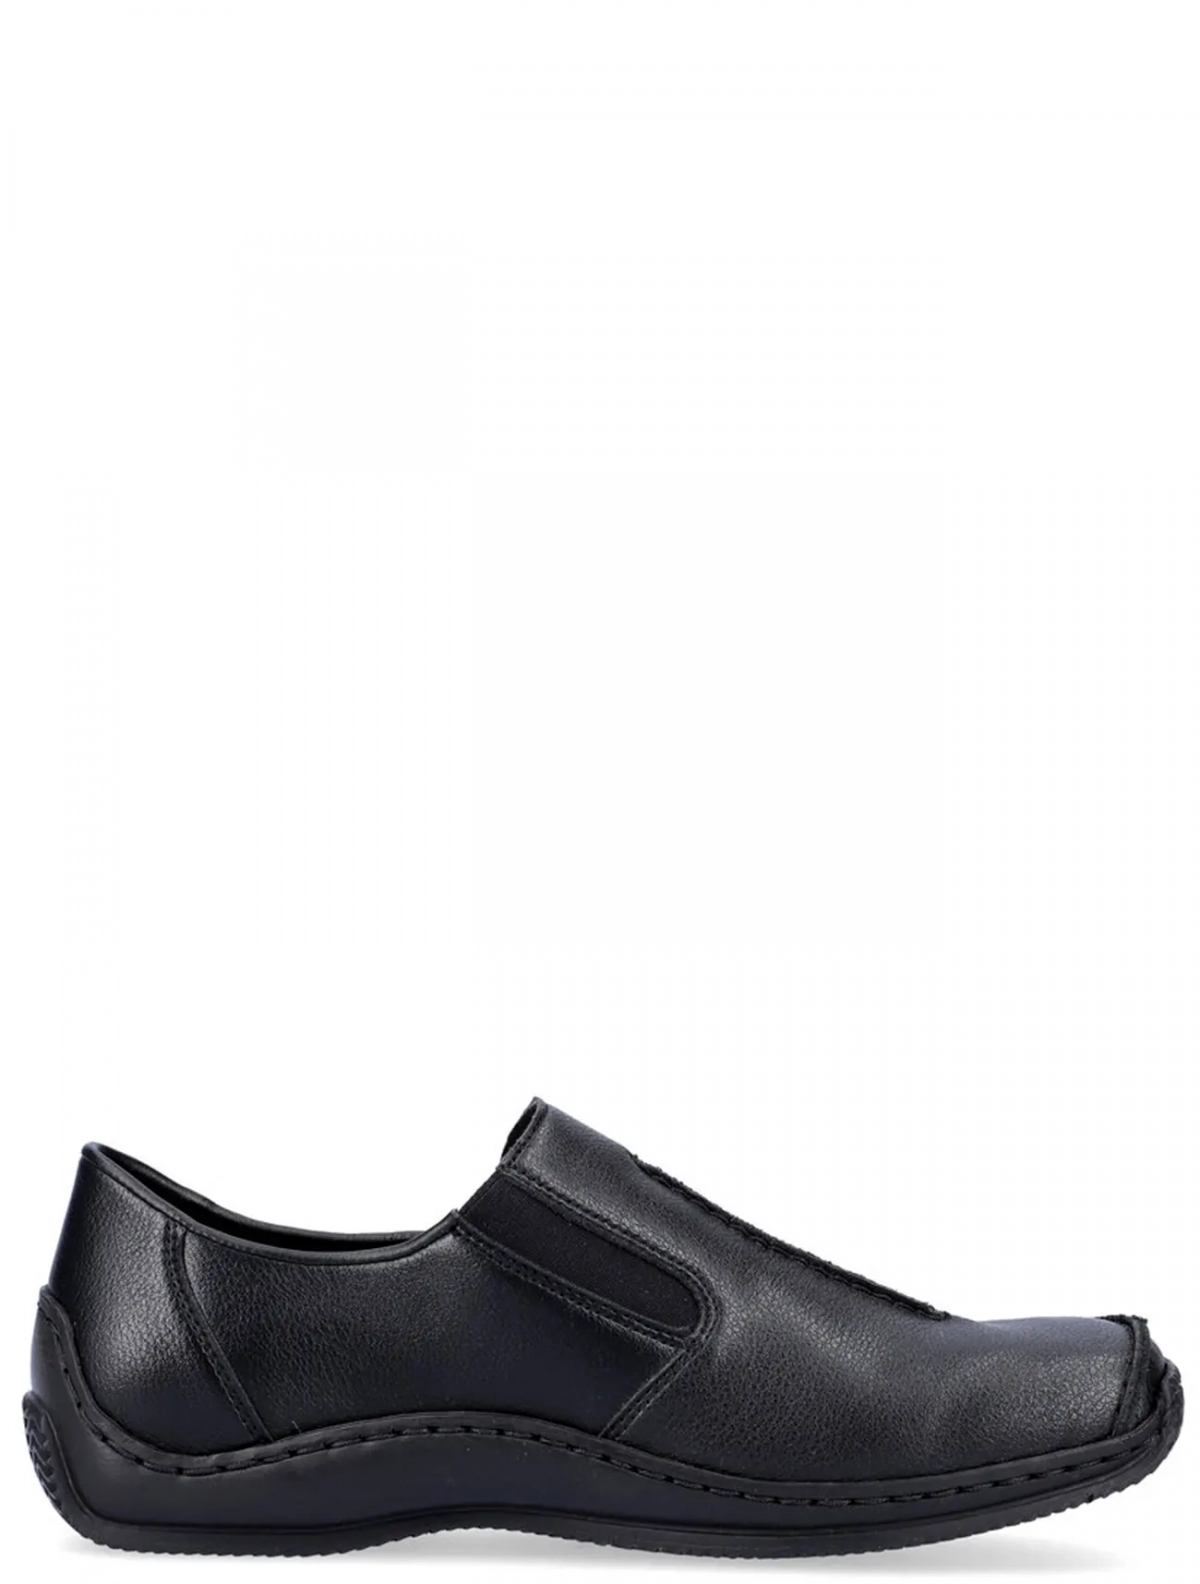 Rieker L1751-01 женские туфли